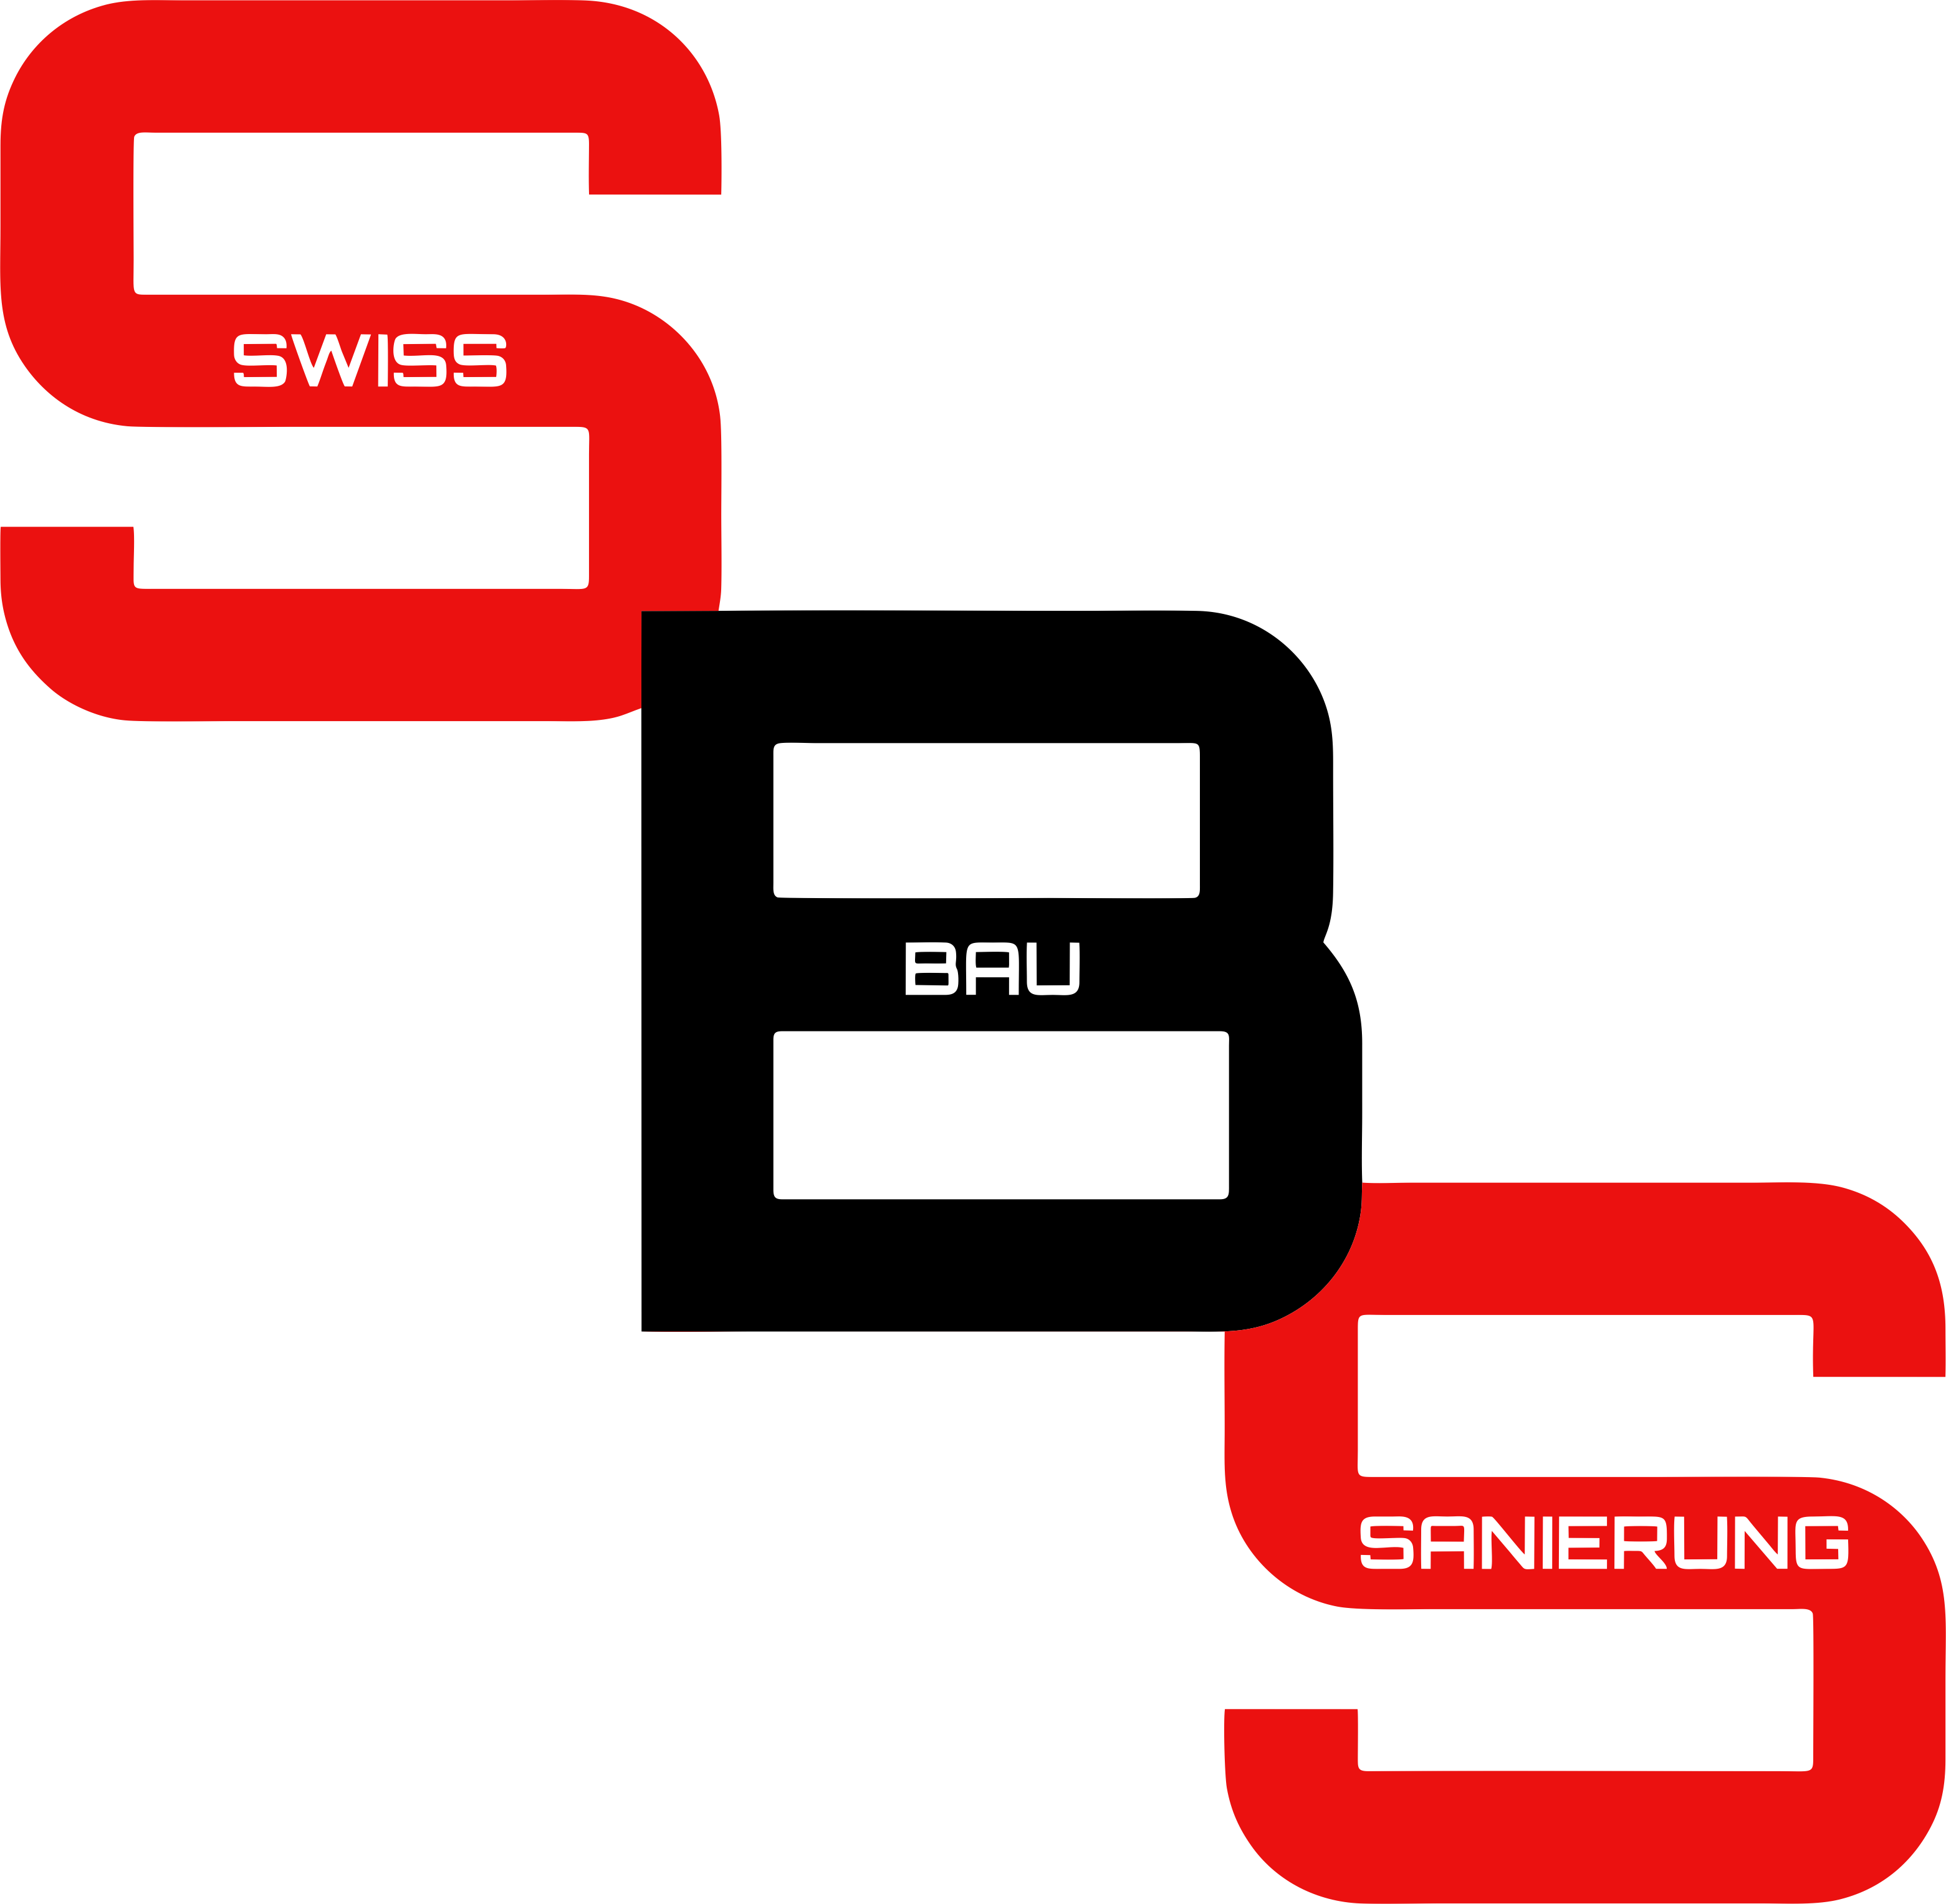 Swiss Bau & Sanierung